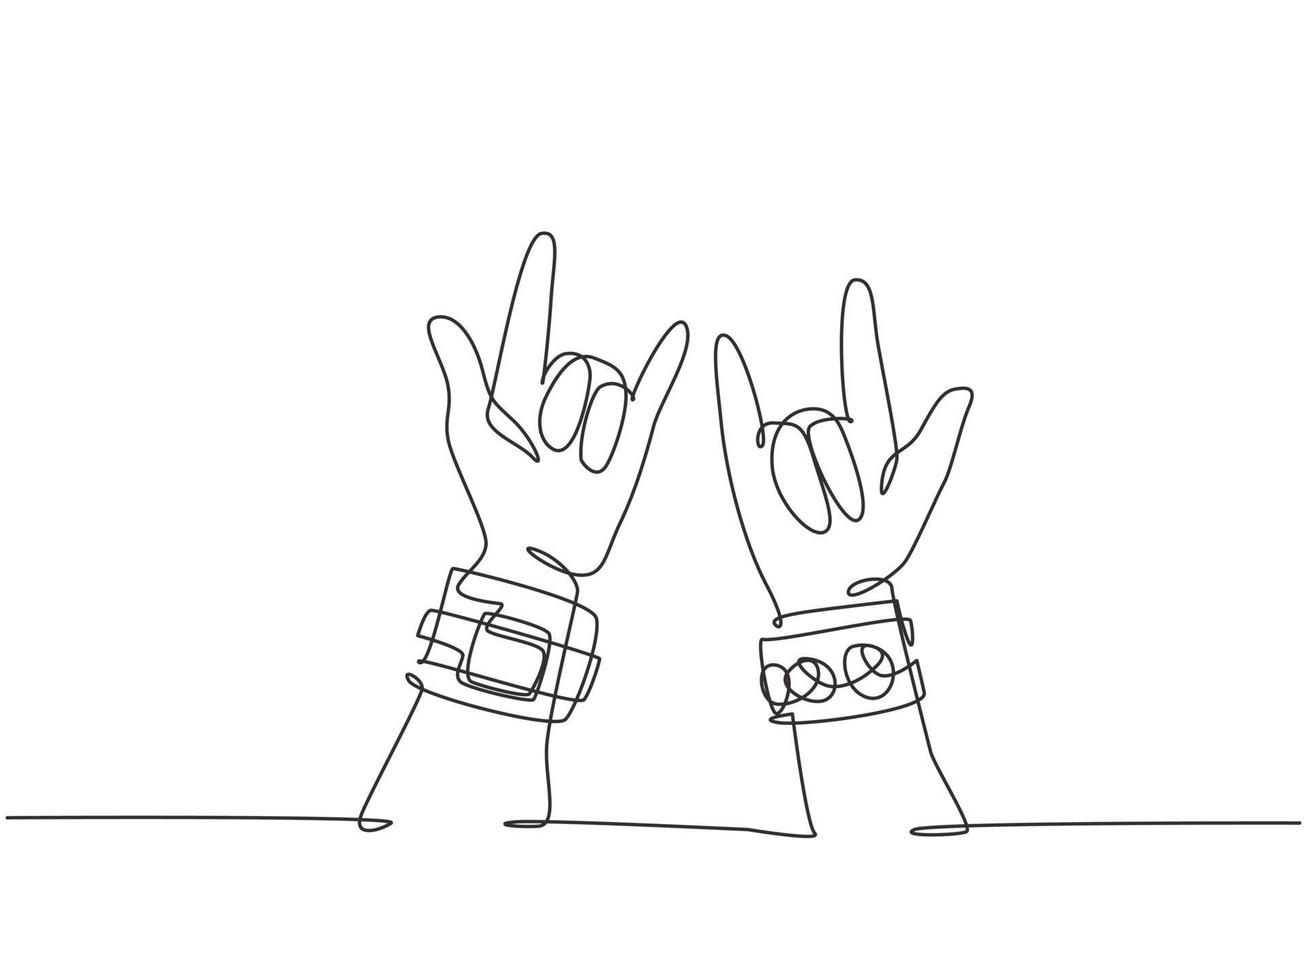 dessin au trait continu unique de rocker montrant le geste de la main de la musique rock. Concept de performance de l'artiste musicien moderne une ligne dessiner illustration vectorielle de conception graphique vecteur